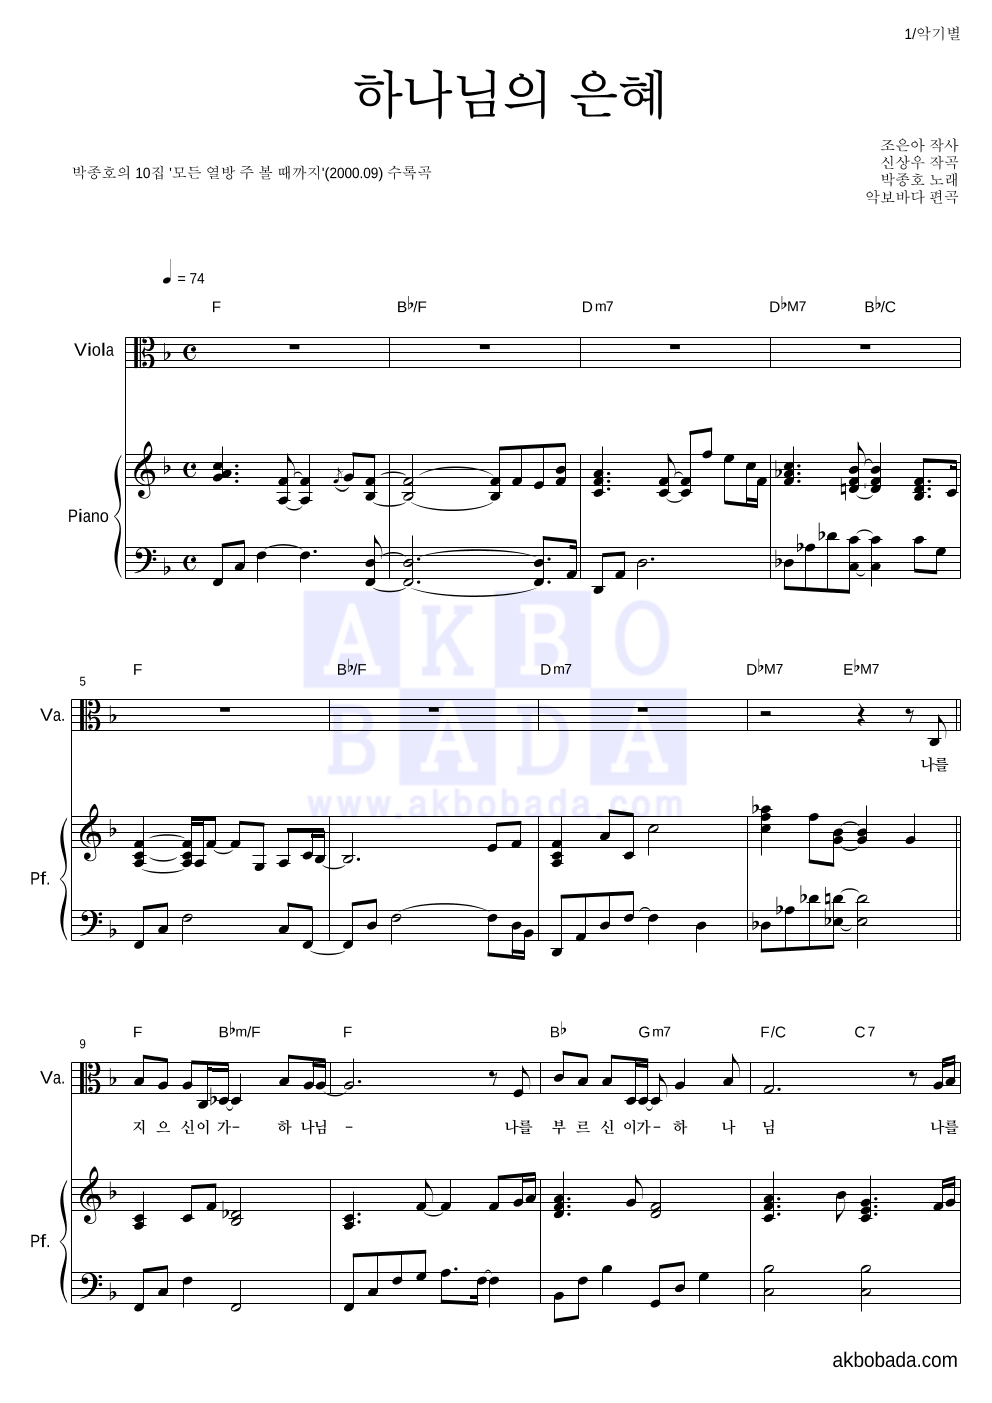 박종호 - 하나님의 은혜 비올라&피아노 악보 